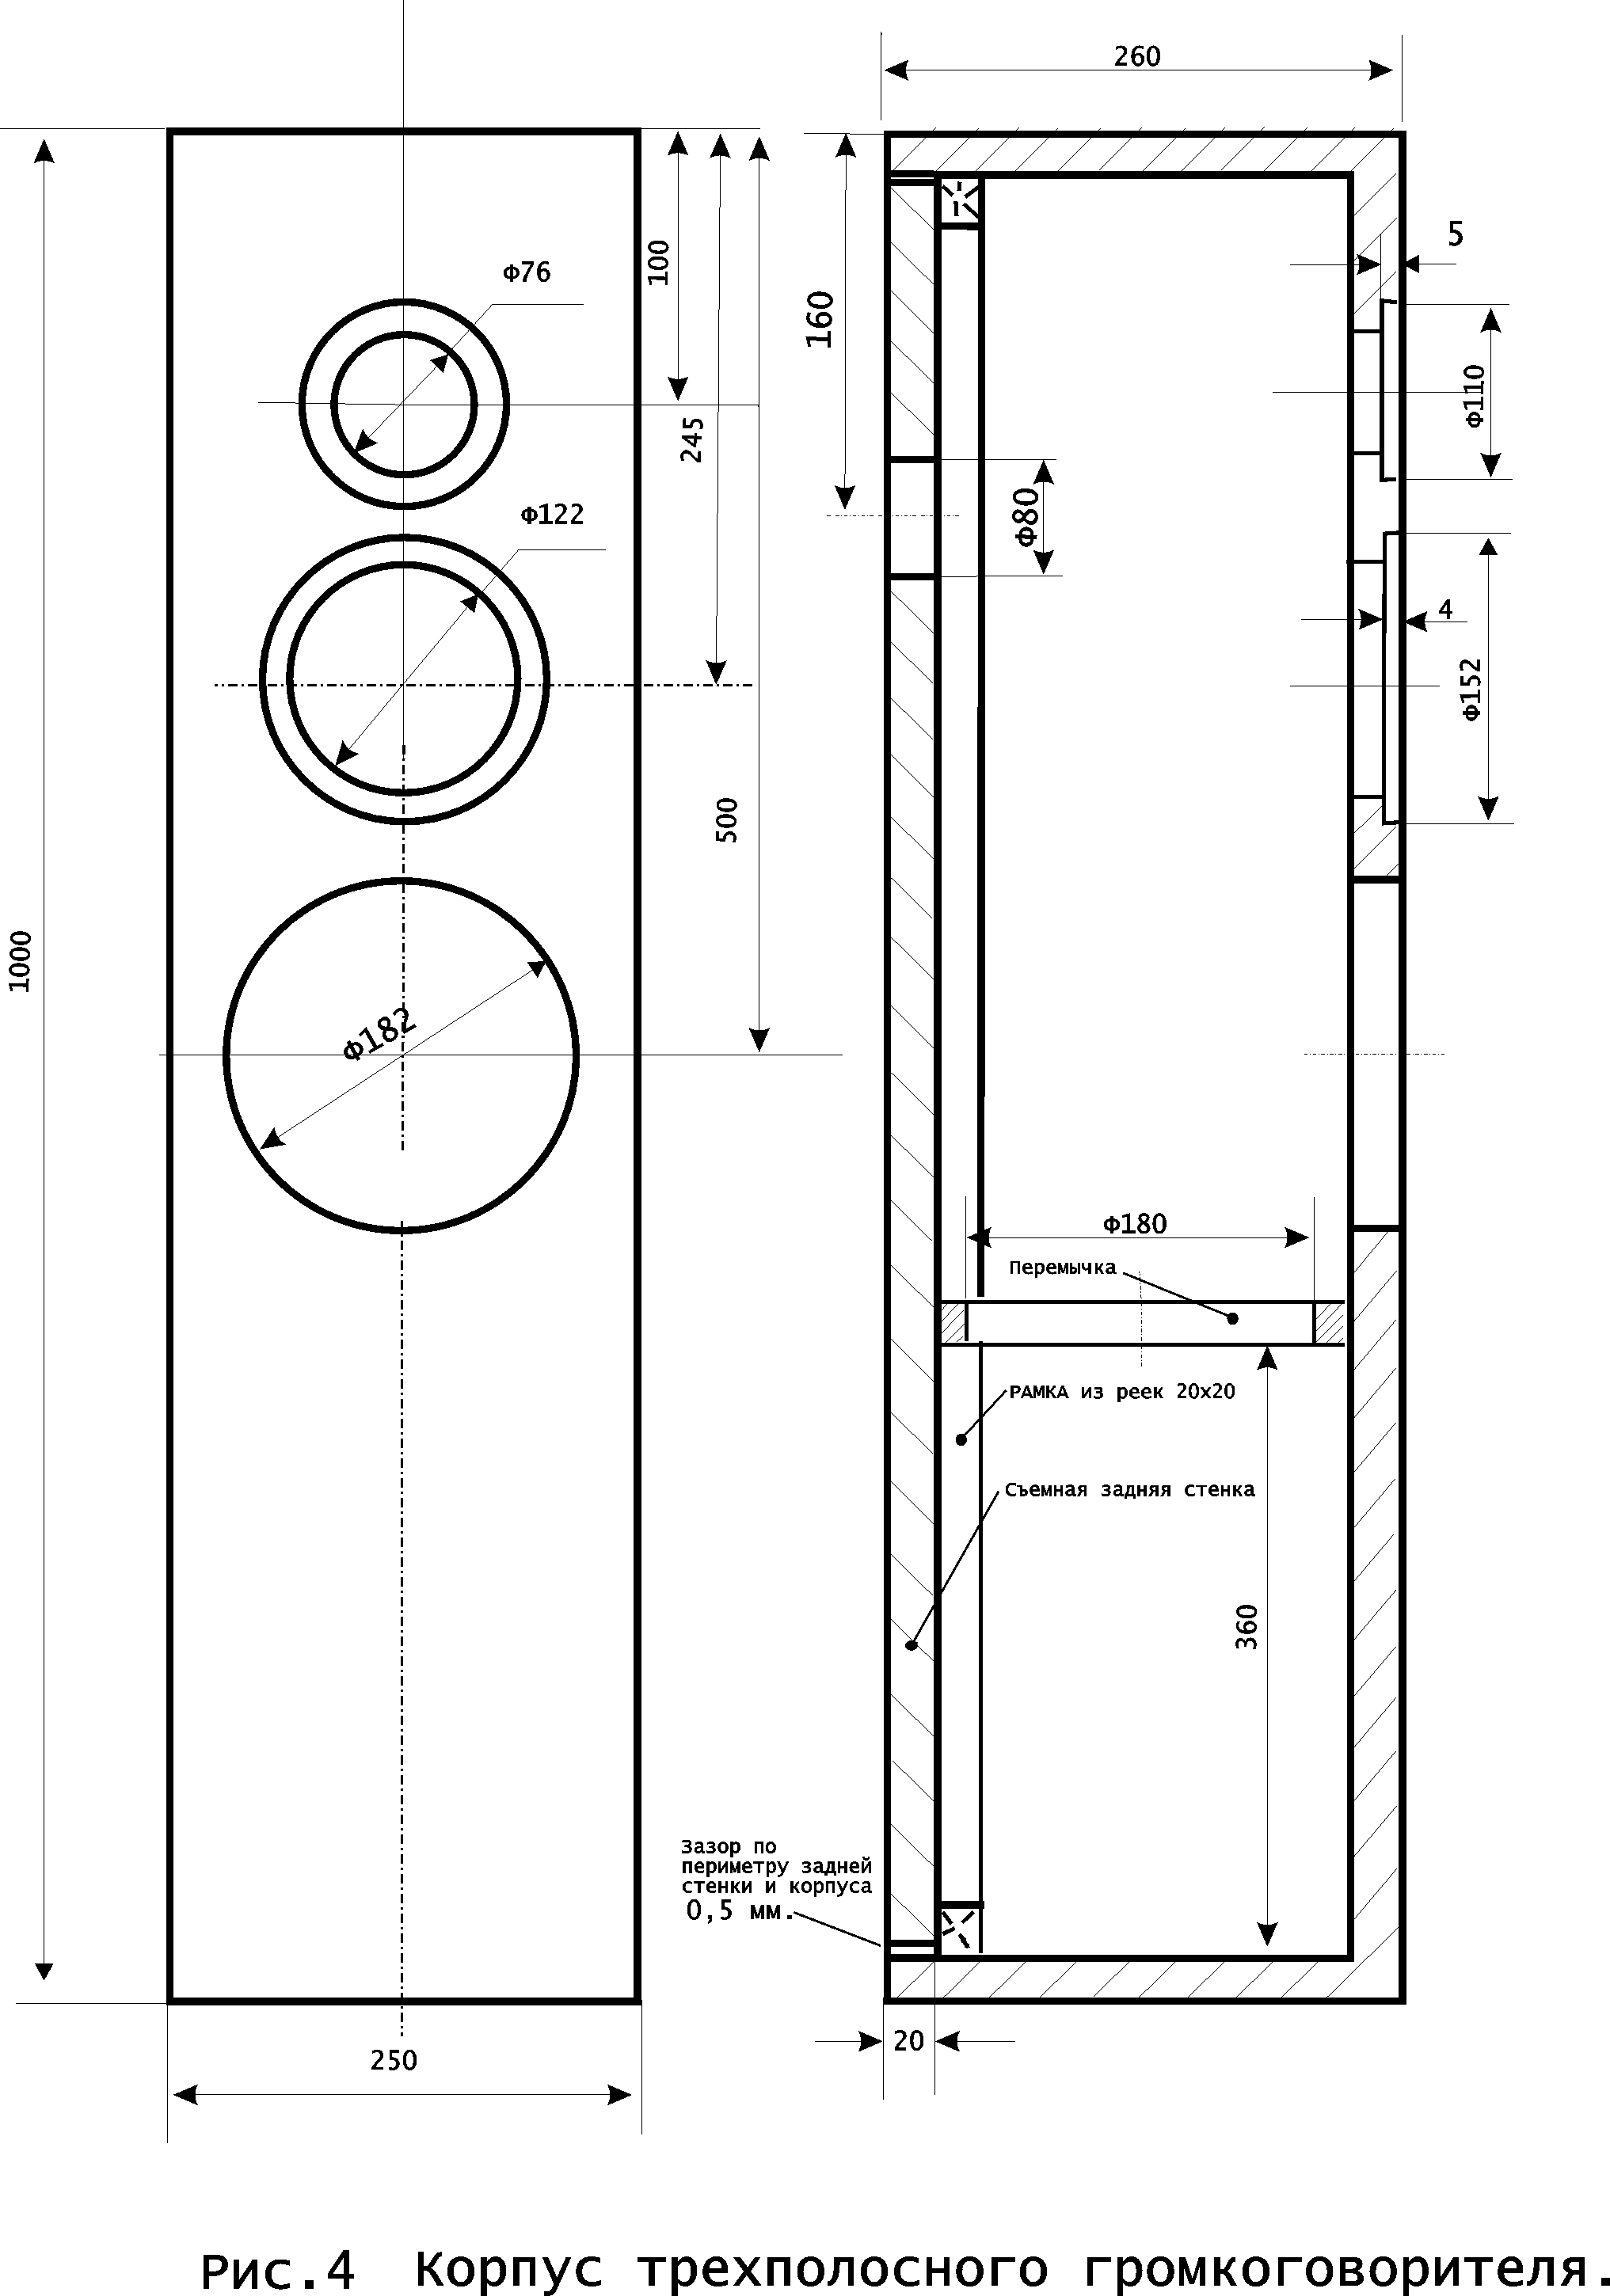 Размер акустической системы